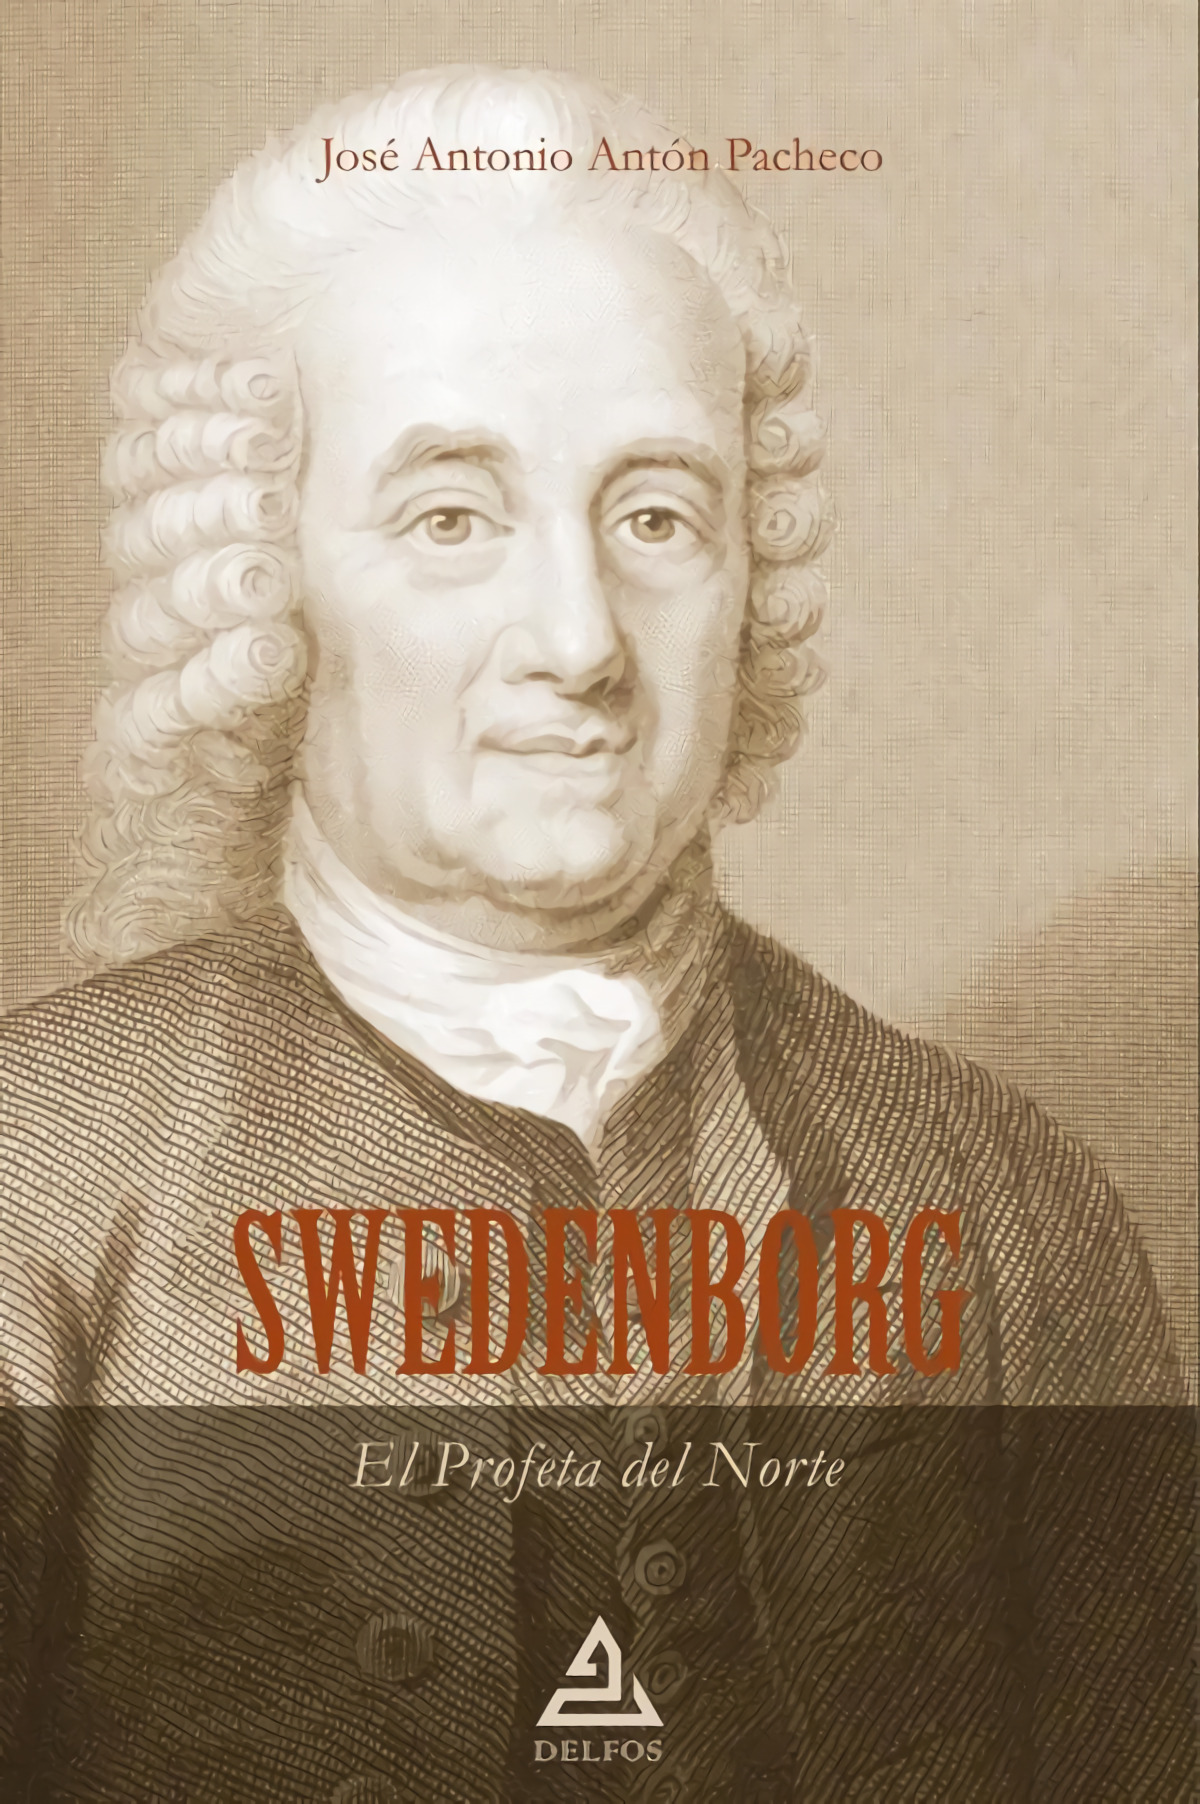 SWEDENBORG - El Profeta del Norte - Antón Pacheco, José Antonio